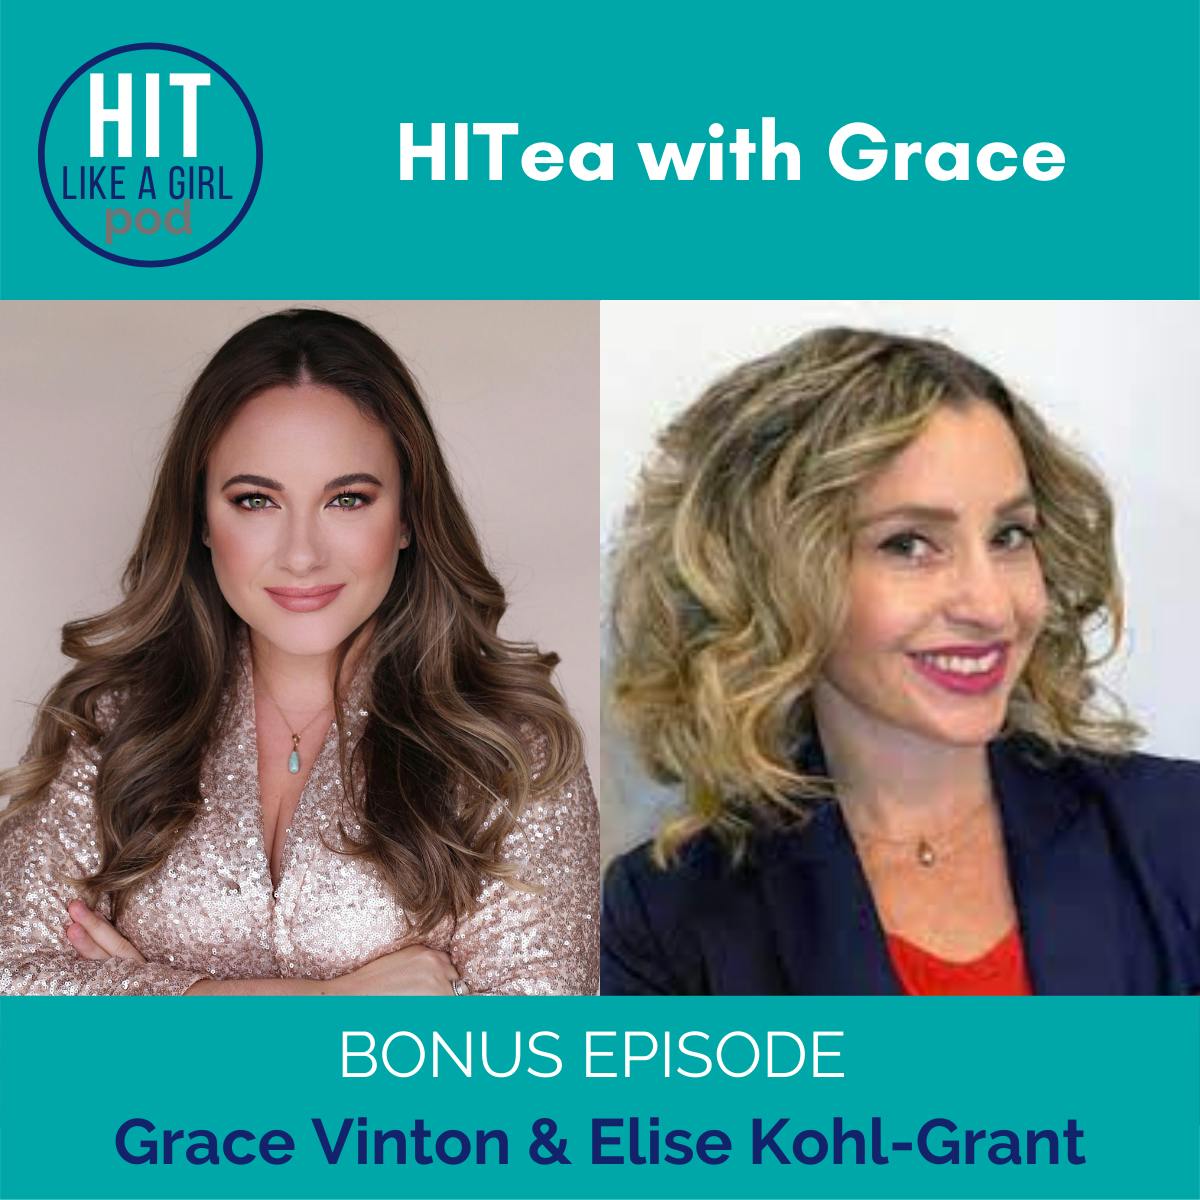 HITea with Grace: Grace Vinton interviews Elise Kohl-Grant